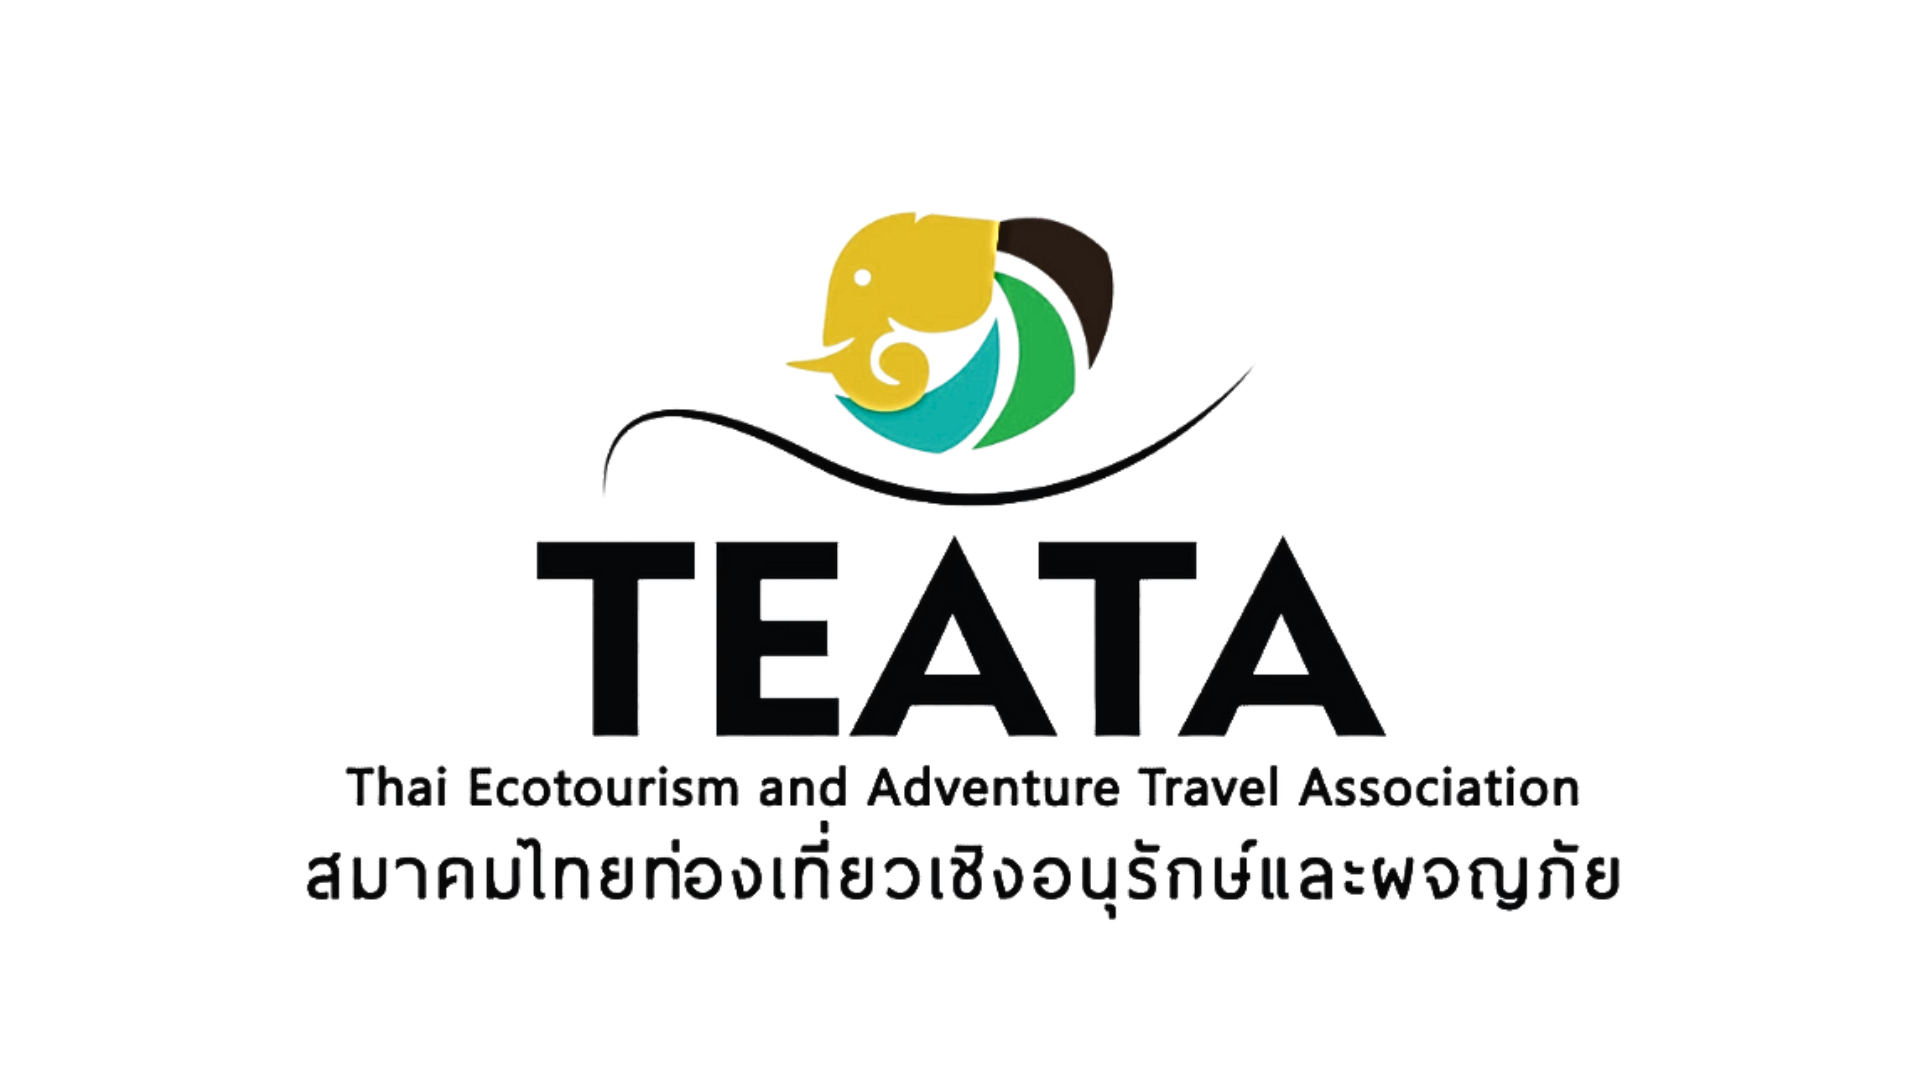 TEATA สมาคมไทยไทยท่องเที่ยวเชิงอนุรักษ์และผจญภัย